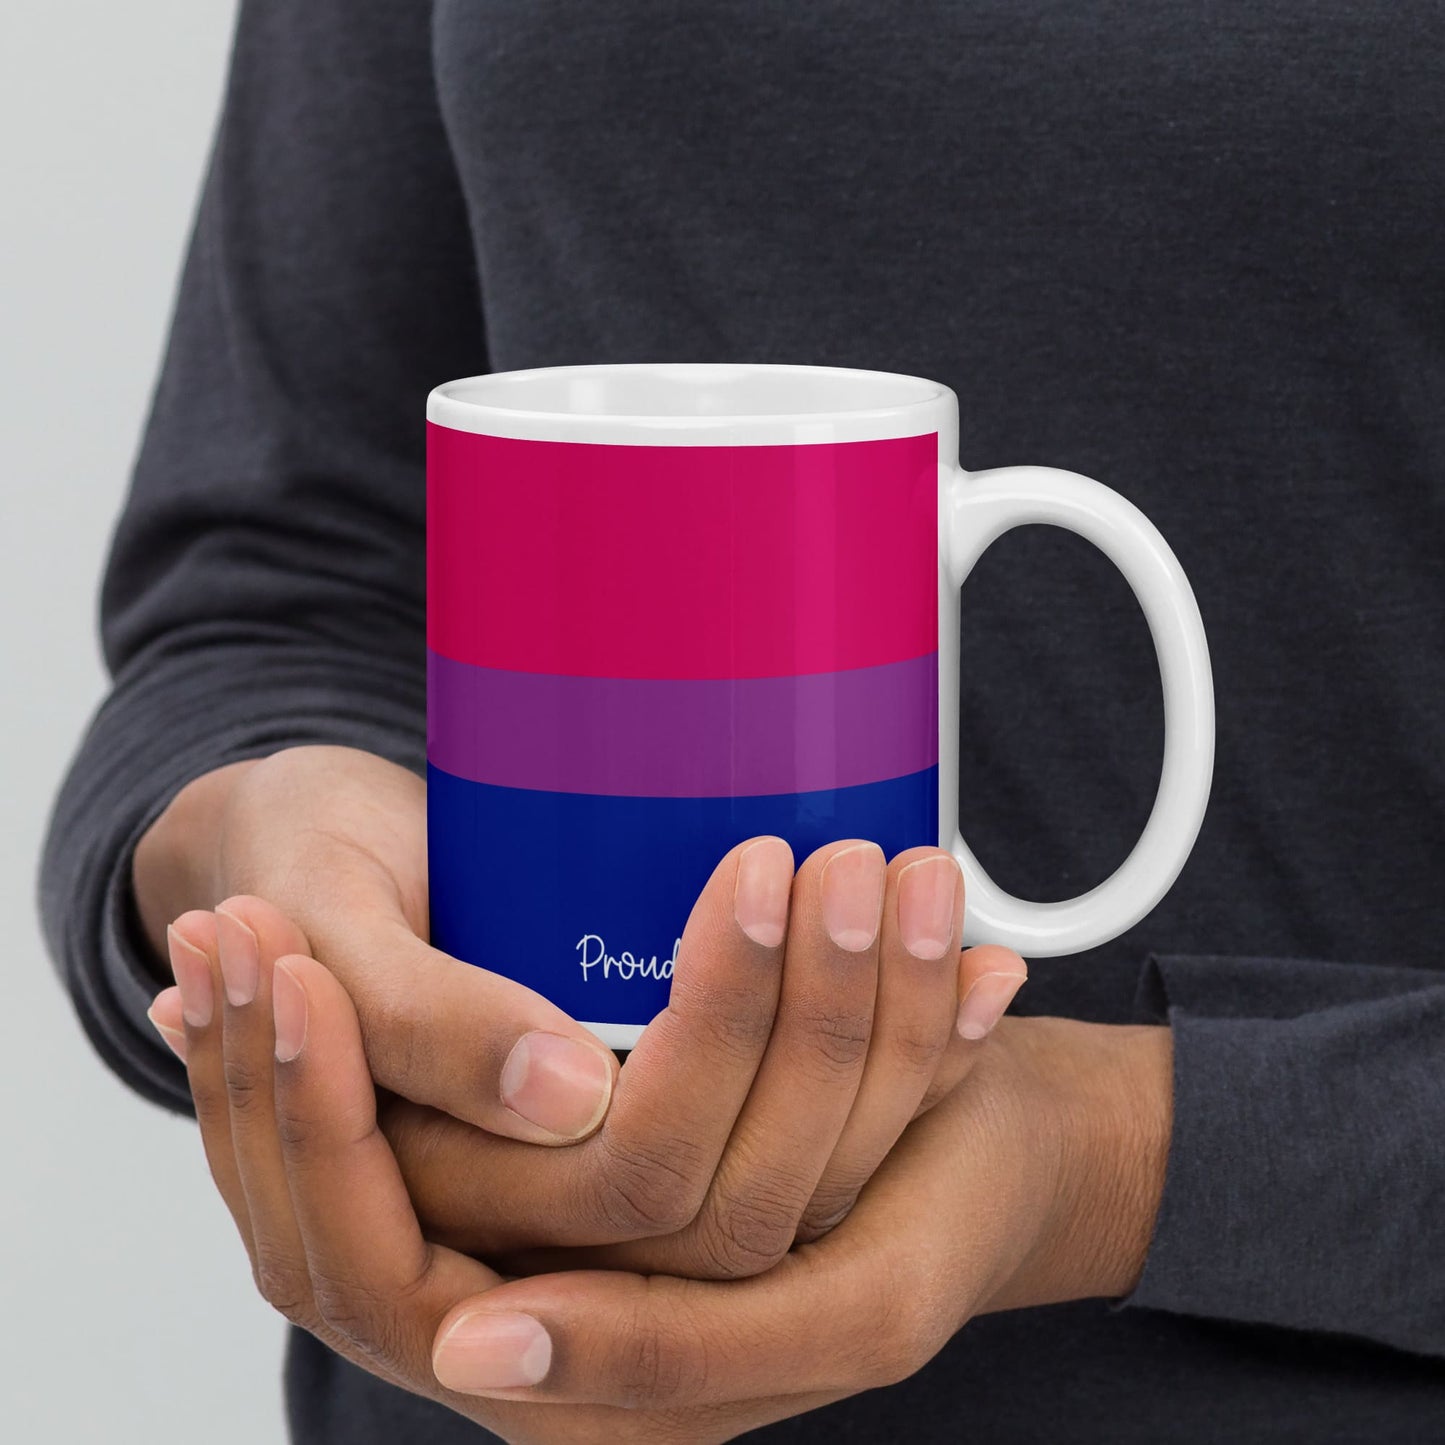 bisexual coffee mug in hands